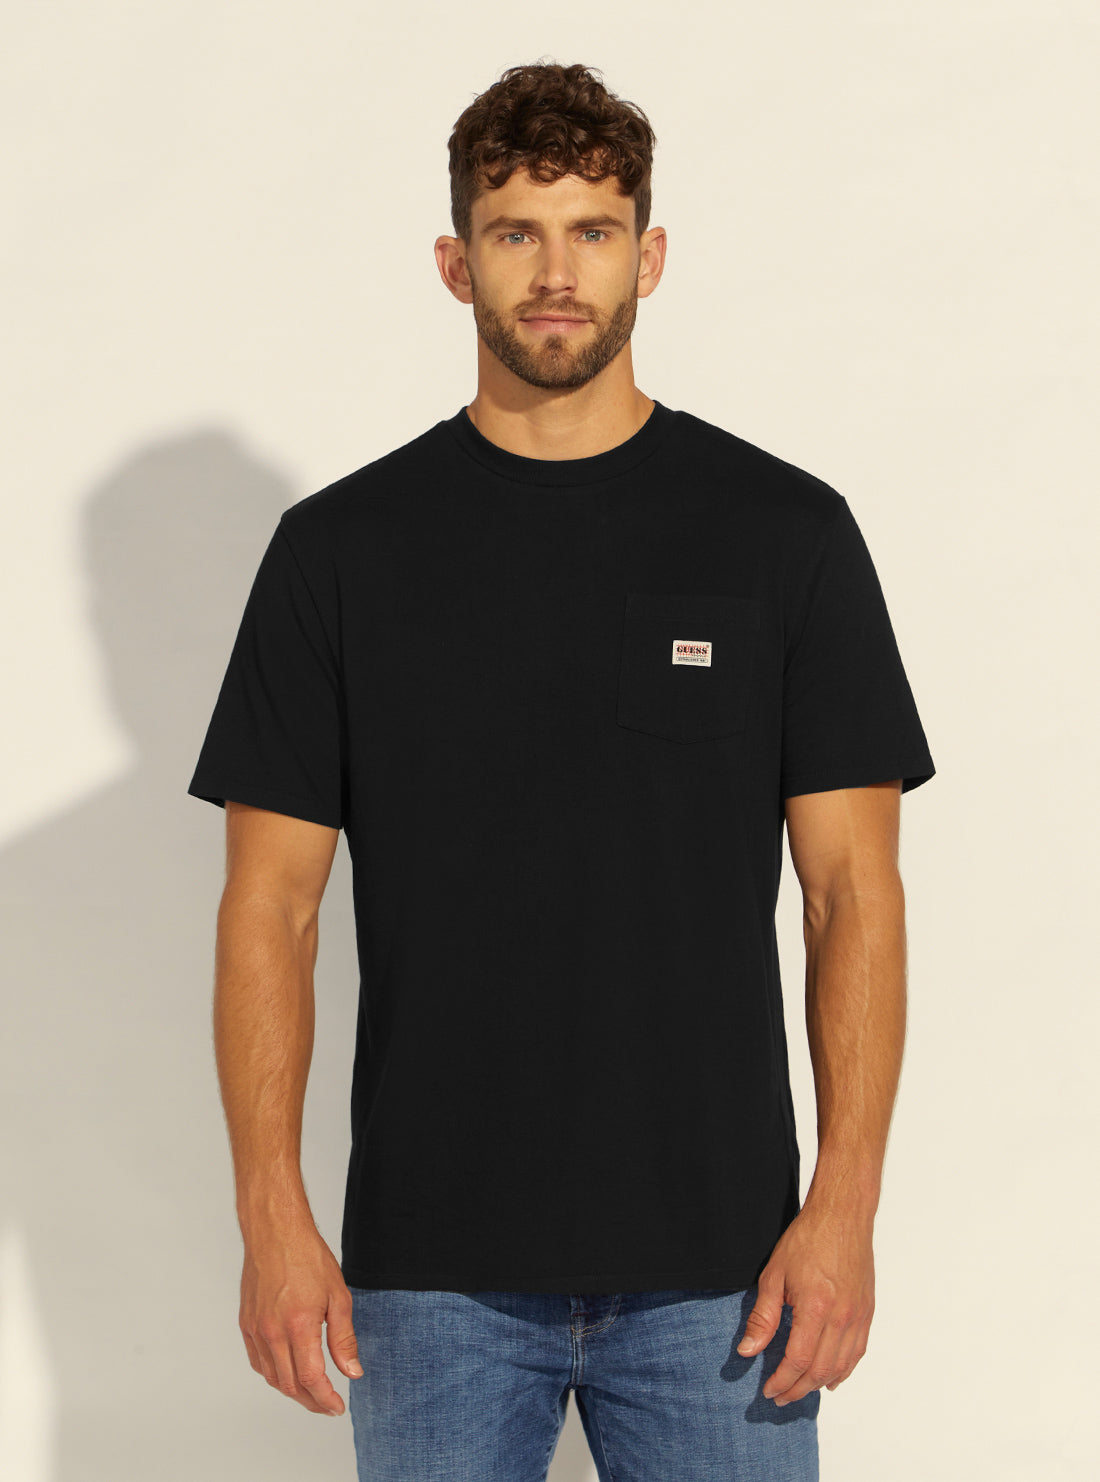 GUESS Mens Guess Originals Black Pocket Label T-Shirt M1BI43K9XF1 Model Front View